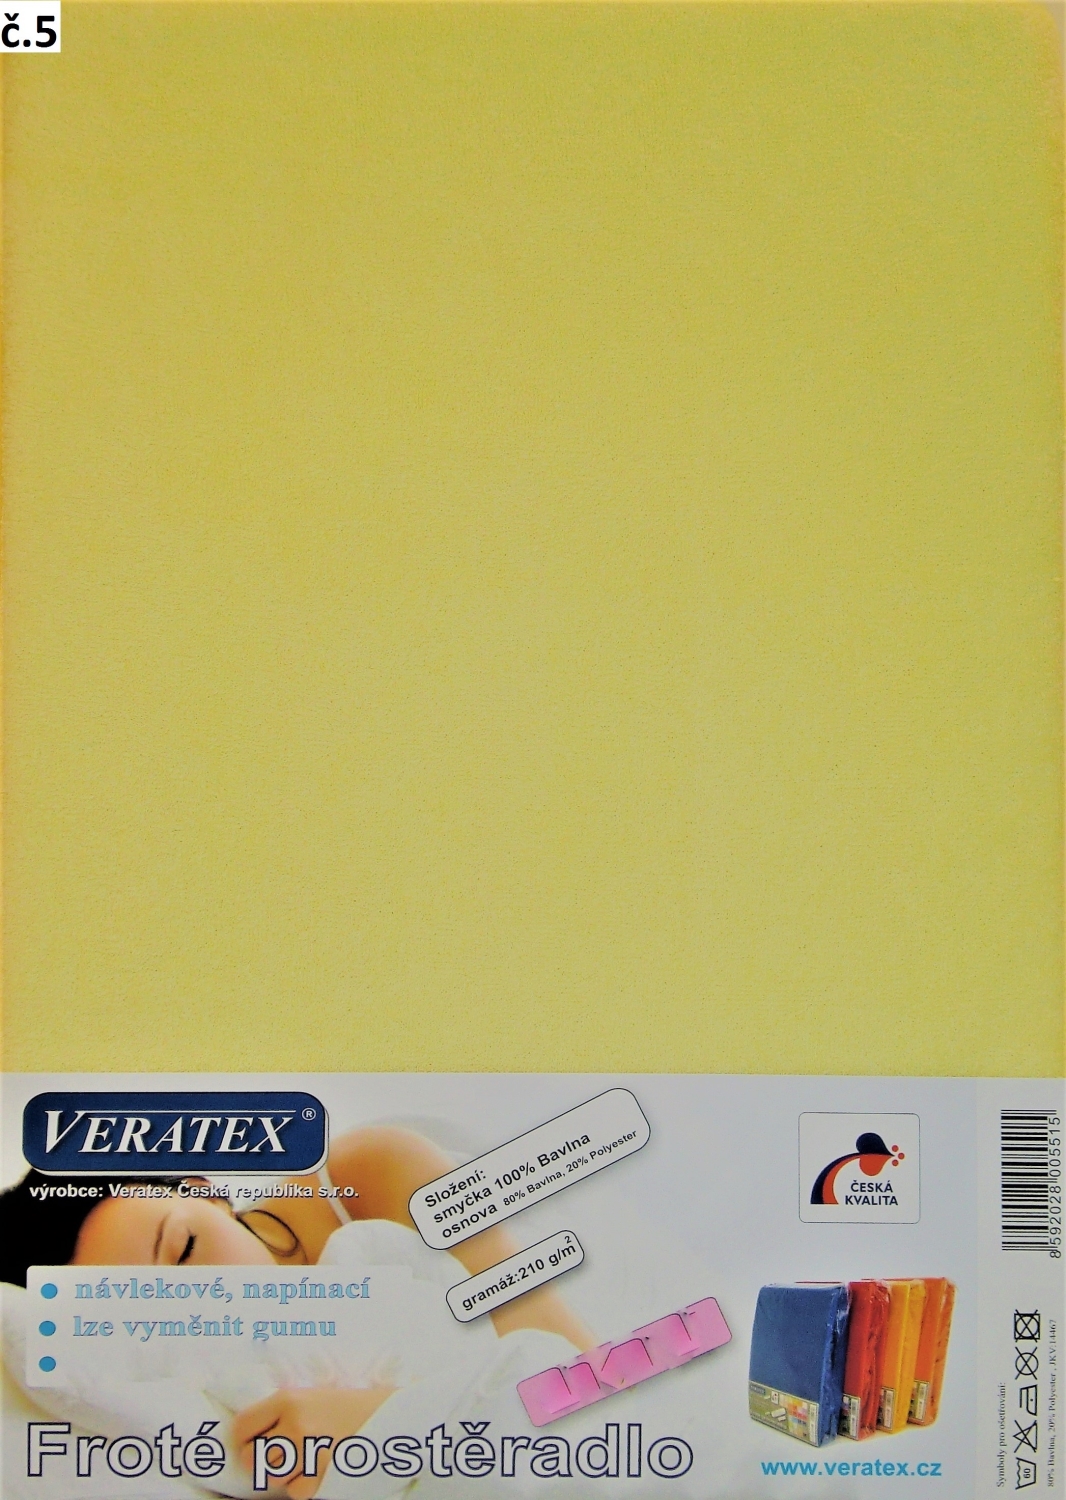 Veratex Froté prostěradlo 80x220/16 cm (č. 5-sv.žlutá)